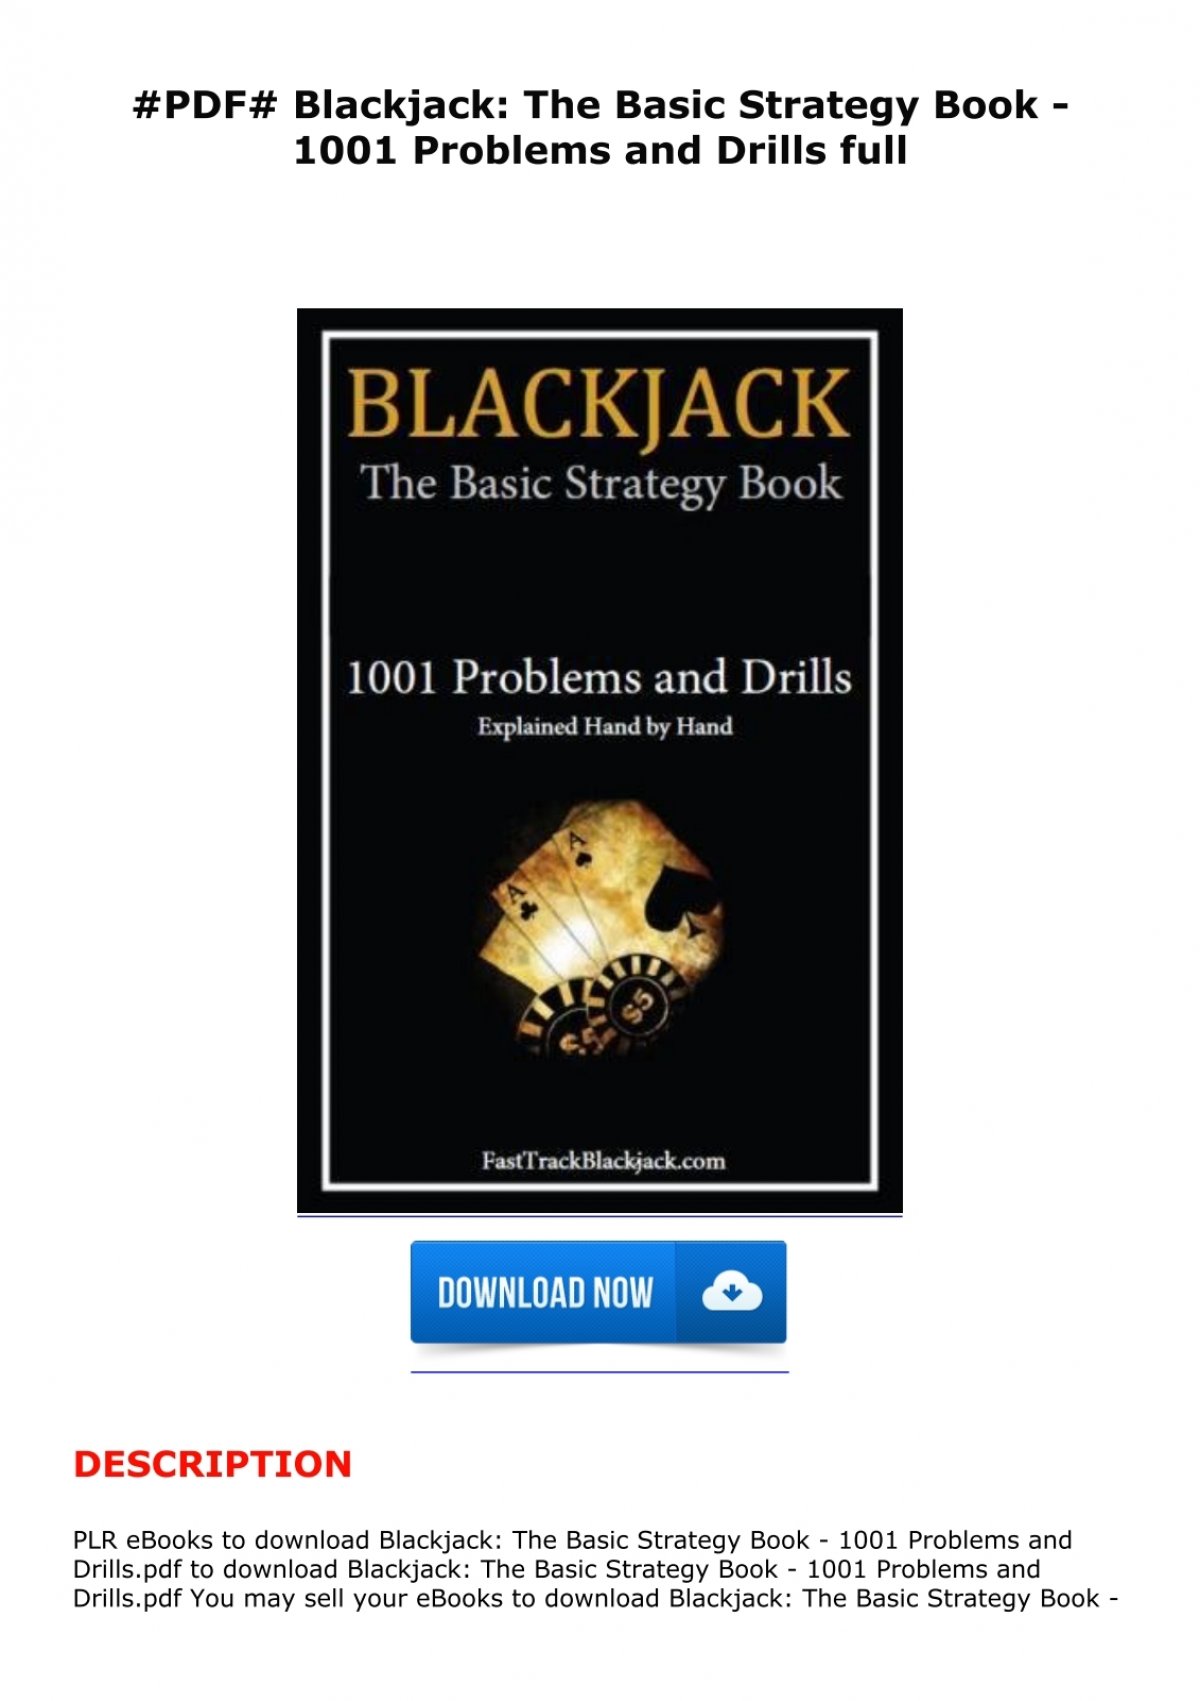 Blackjack basic strategy book free